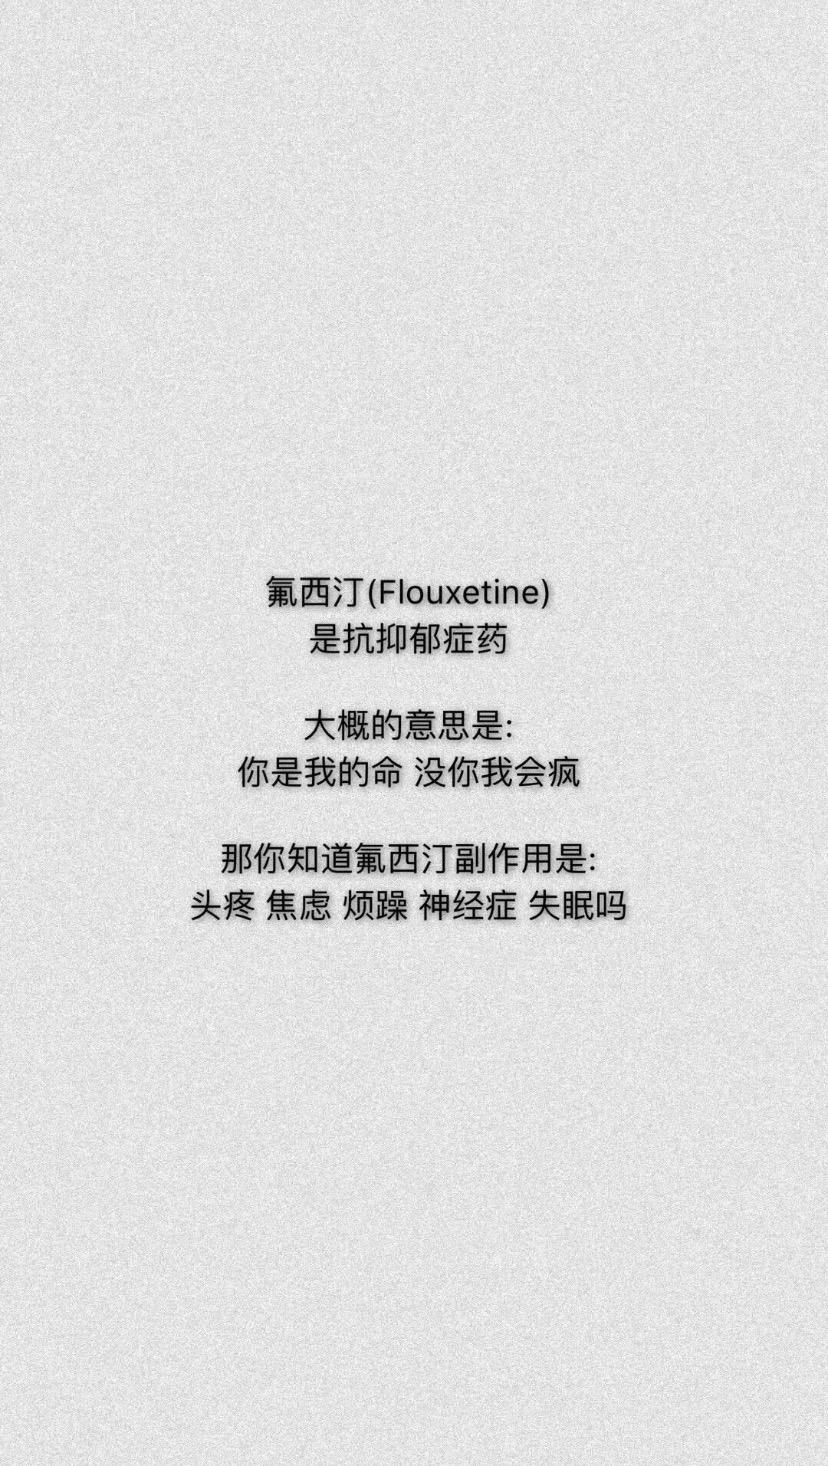 氟西汀 -抗抑郁的药 英文名叫"fluoxetine" 大概意思是:你是我的命 没